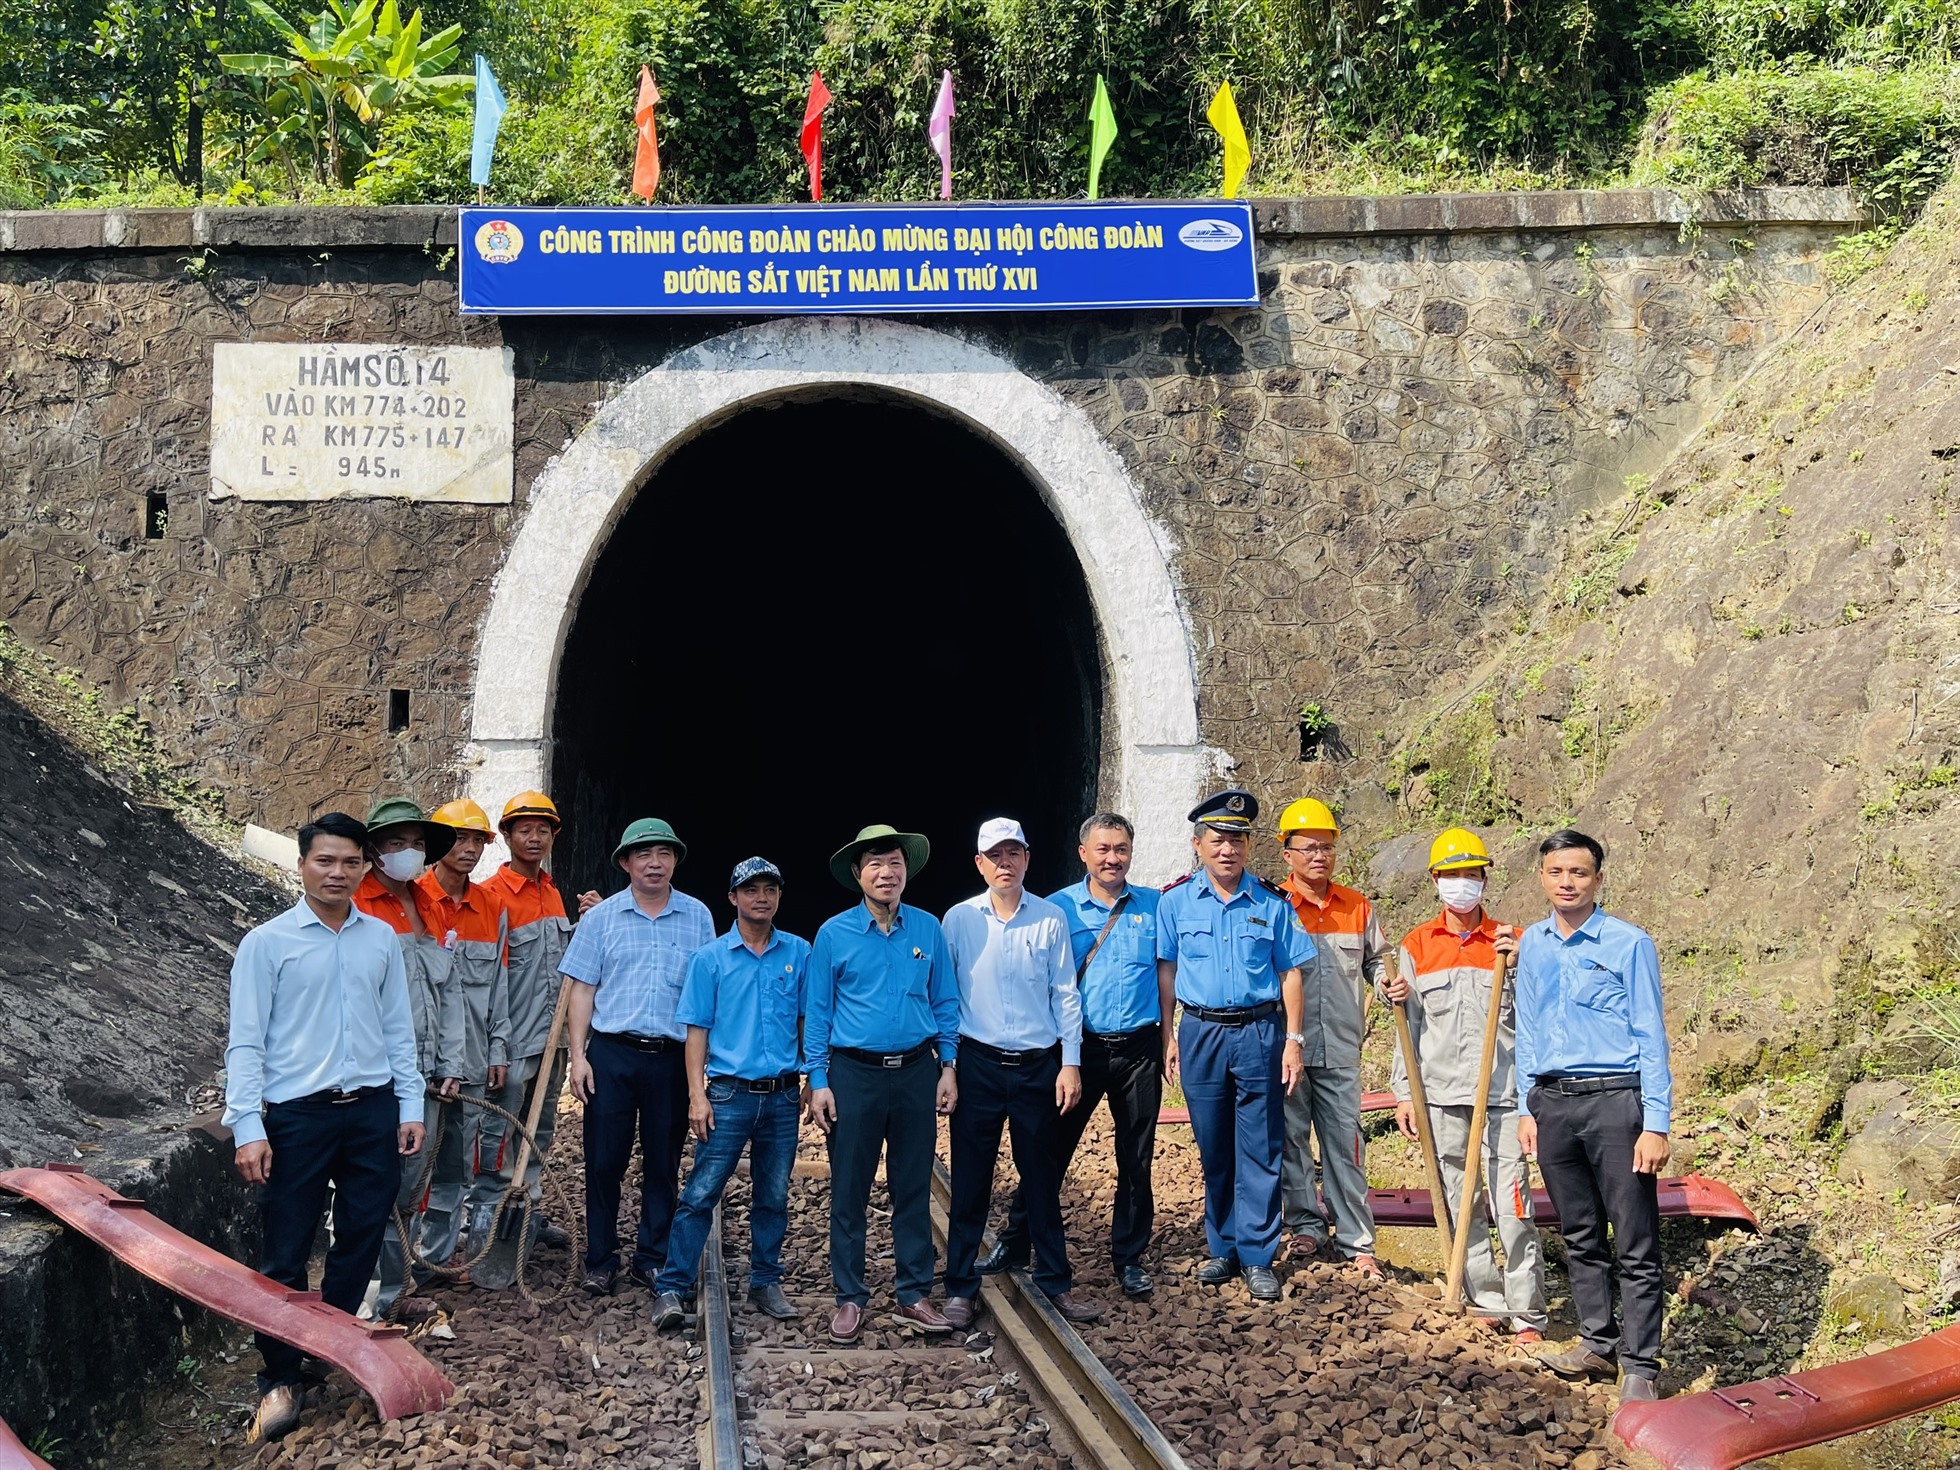 Công trình “Sửa chữa đường trong Hầm số 14 Km774+590” đi qua đèo Hải Vân dài hơn 1,2 km. Ảnh: Mai Hương